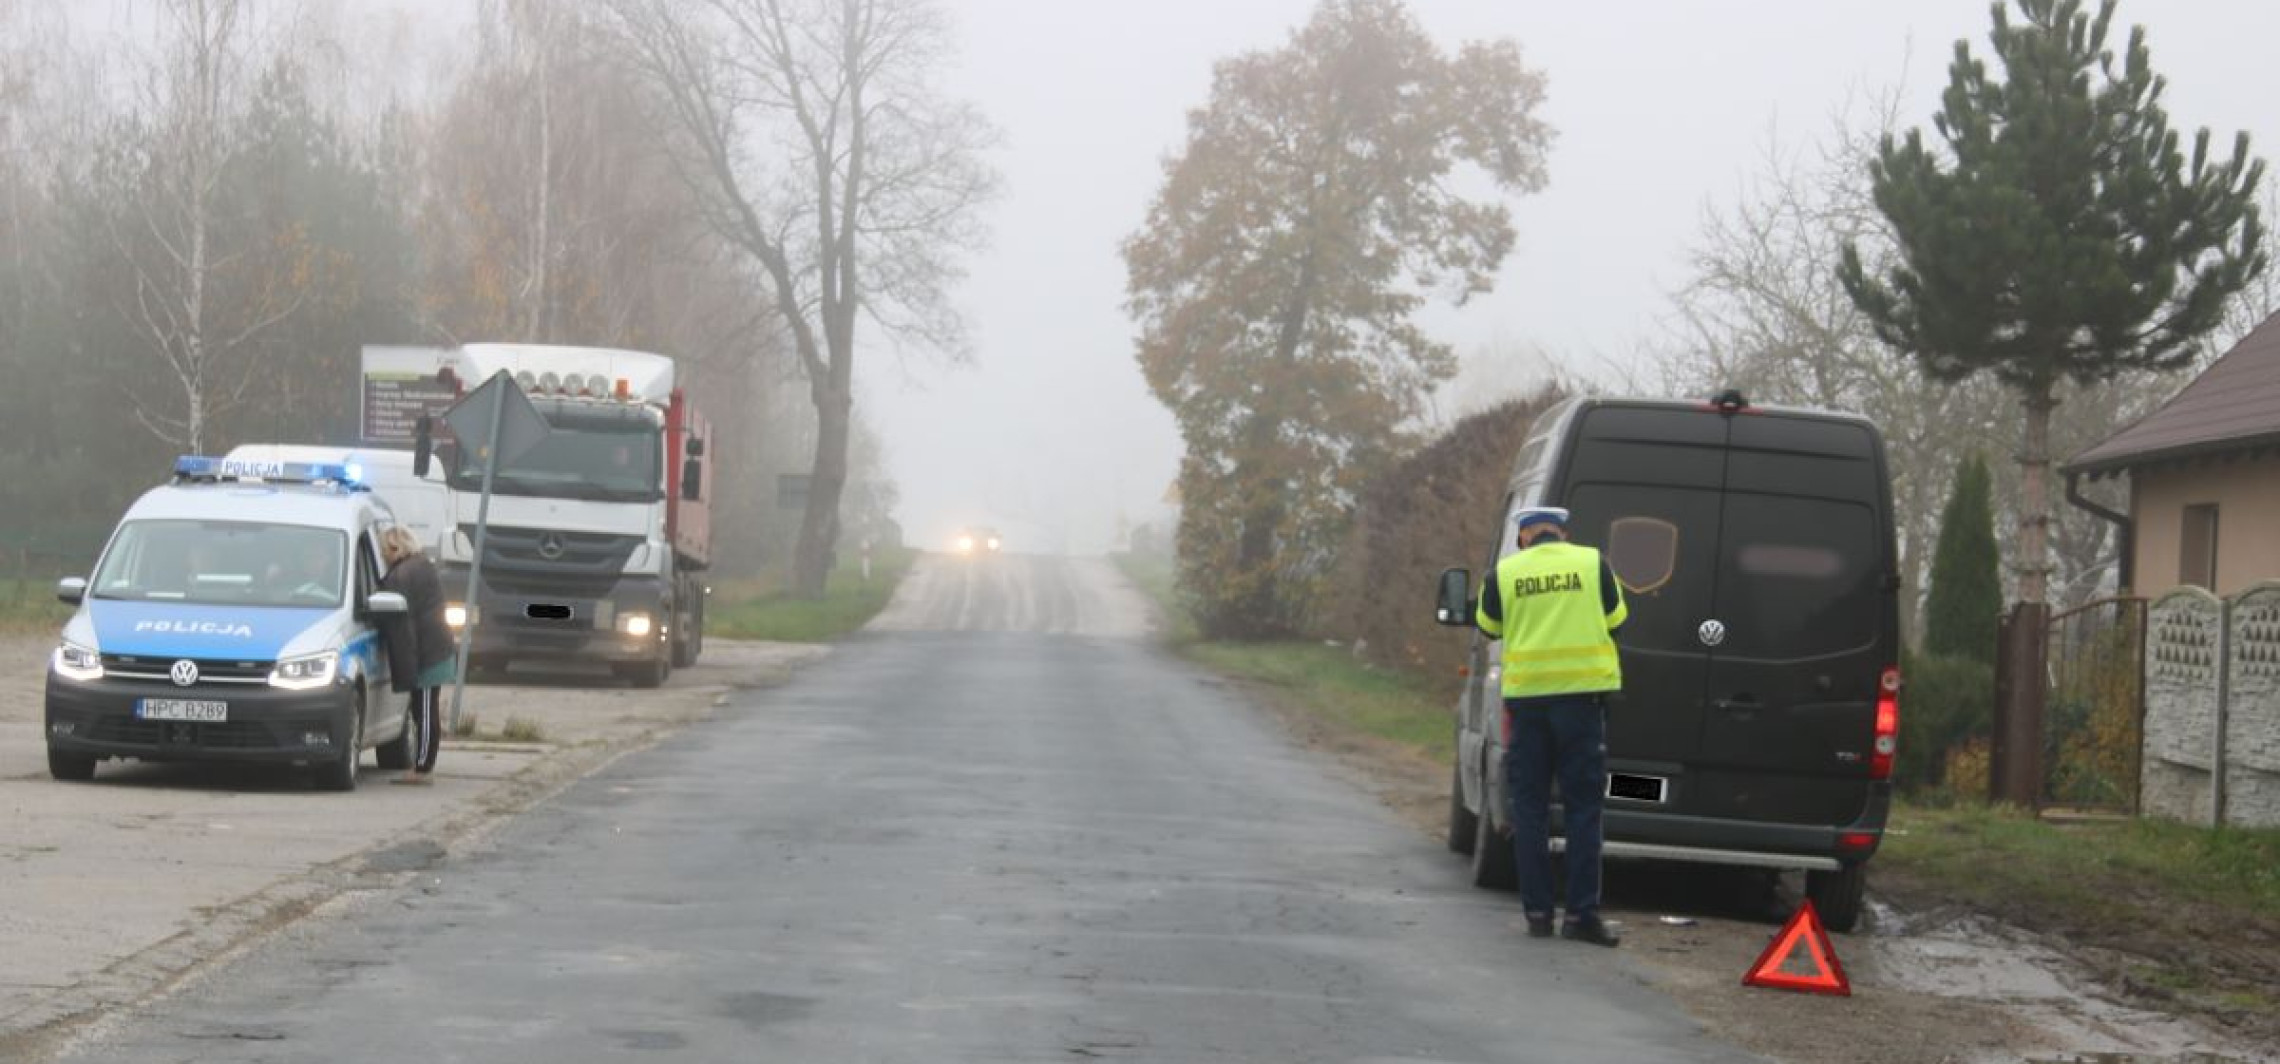 Mogilno - W Żabnie dostawczak zderzył się z motorowerzystą